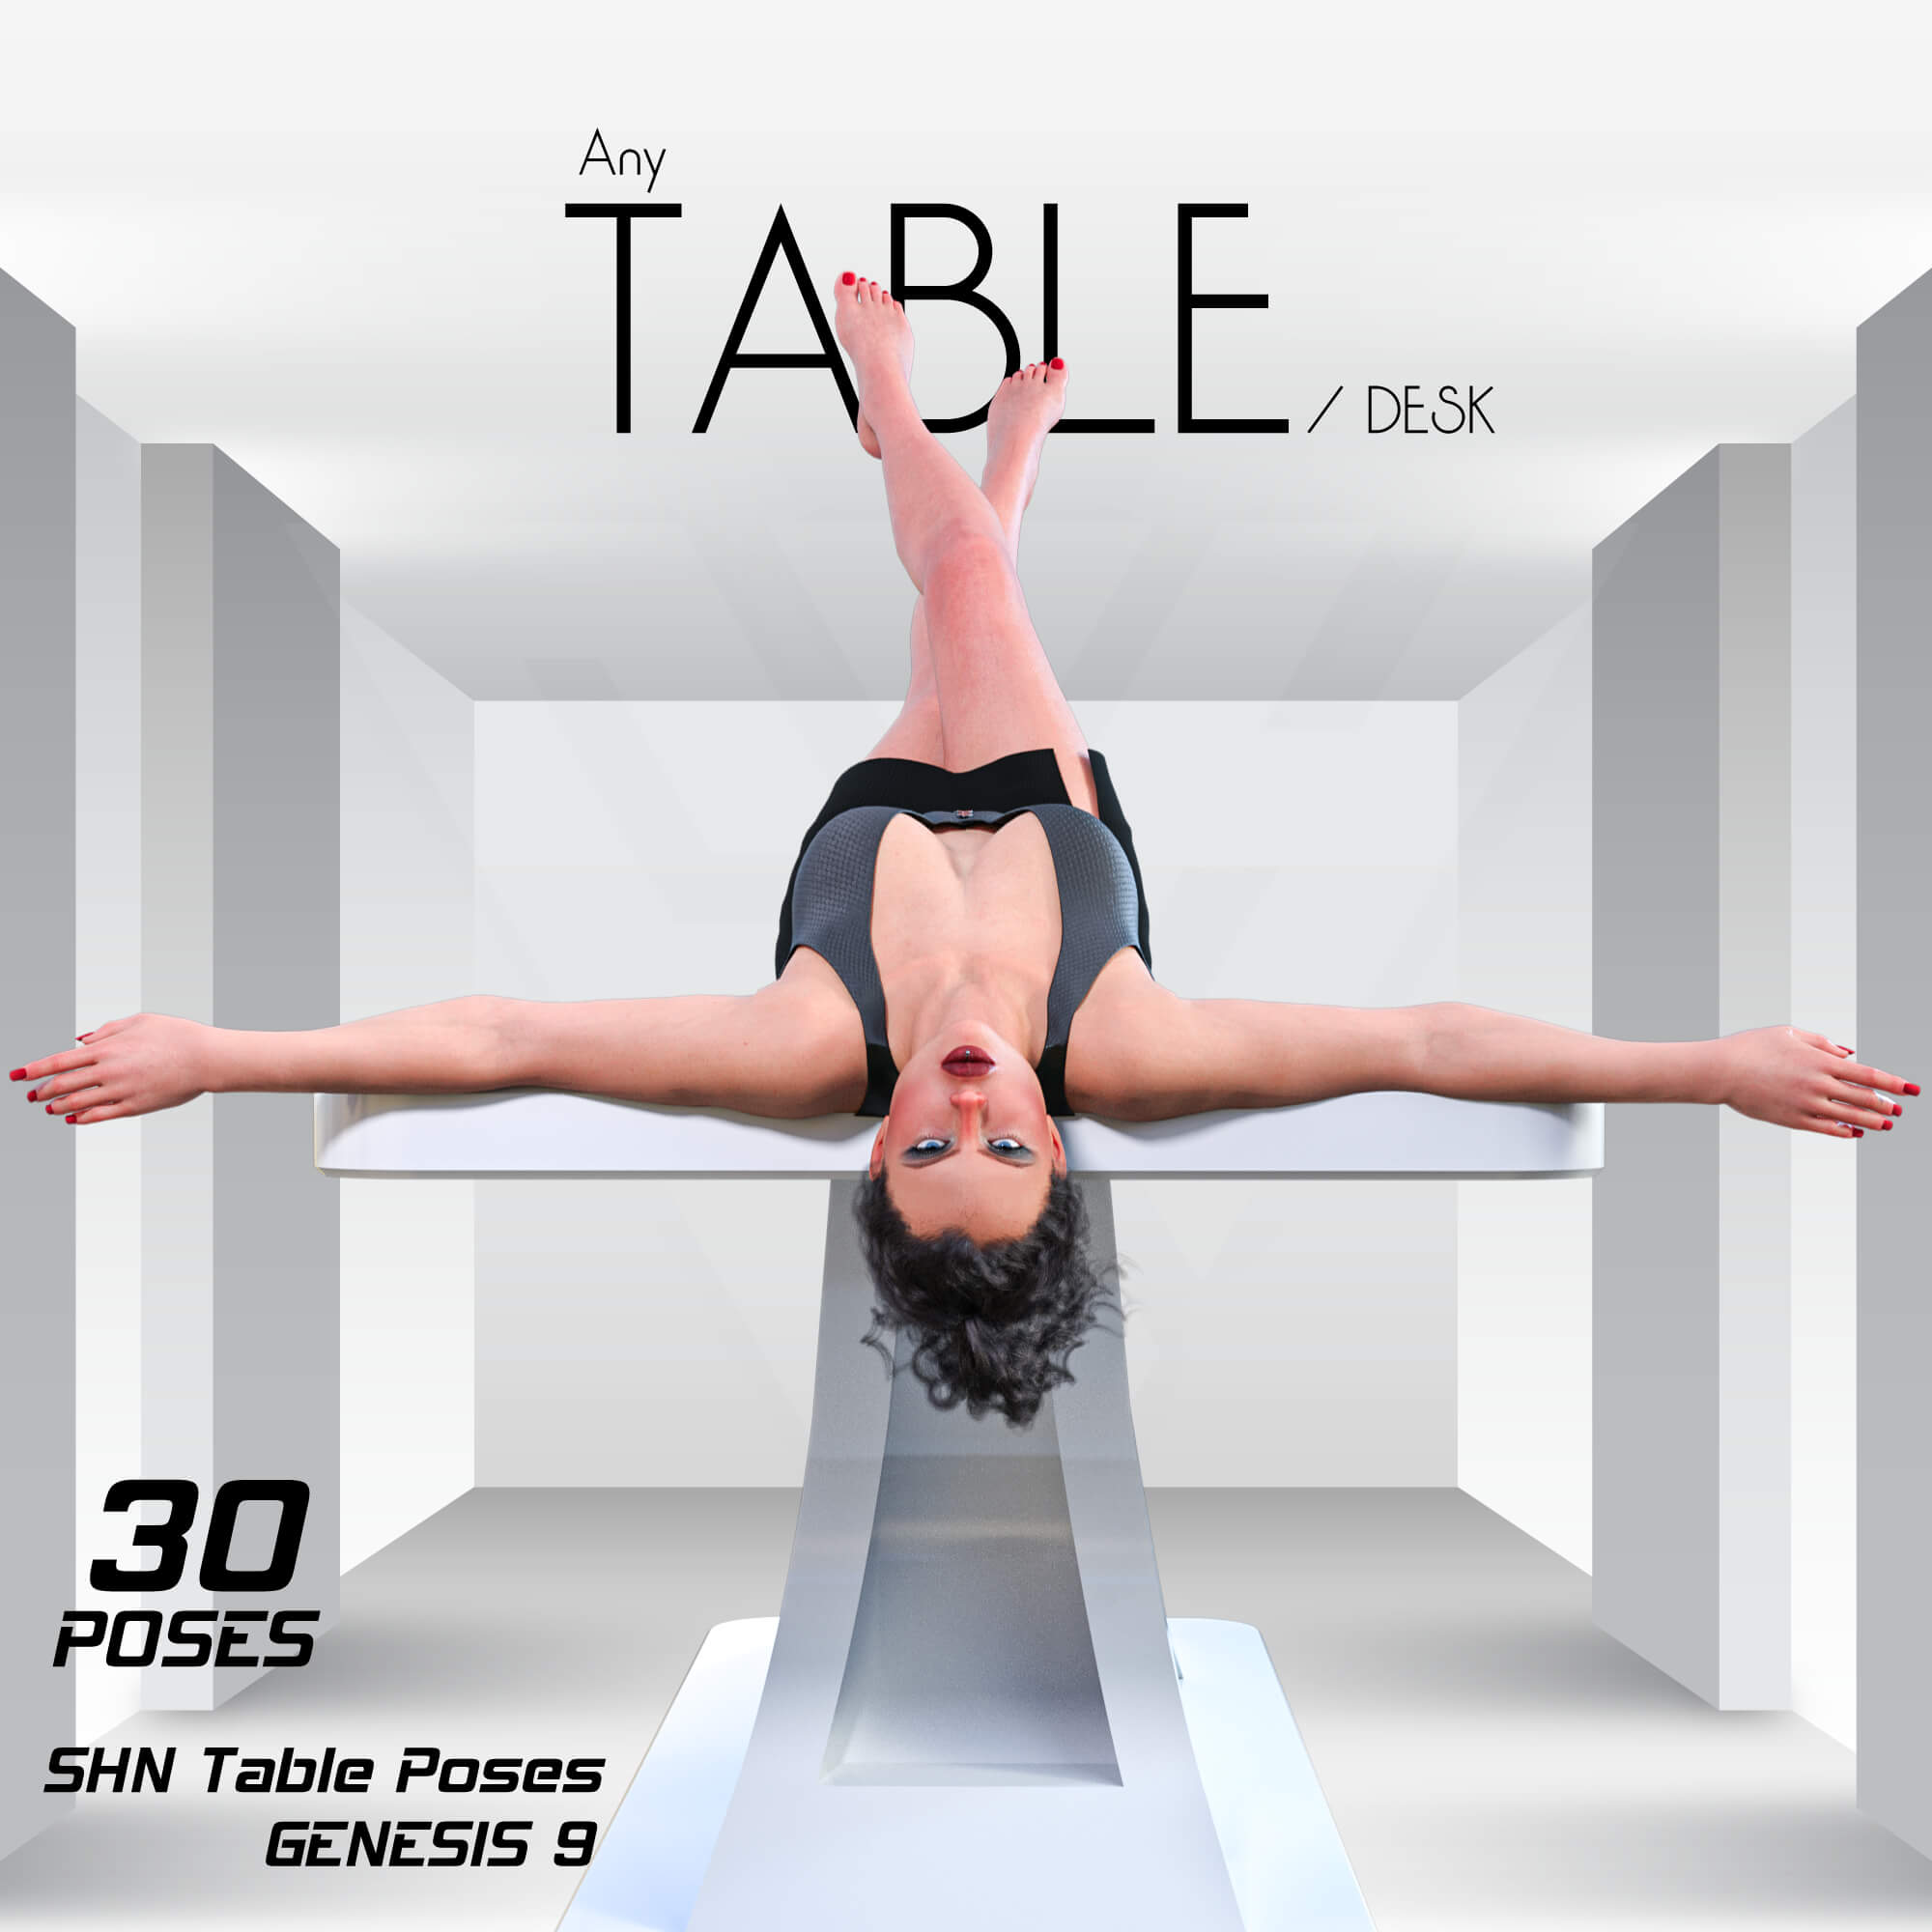 shn table poses 01e2dbdf0211fa0990